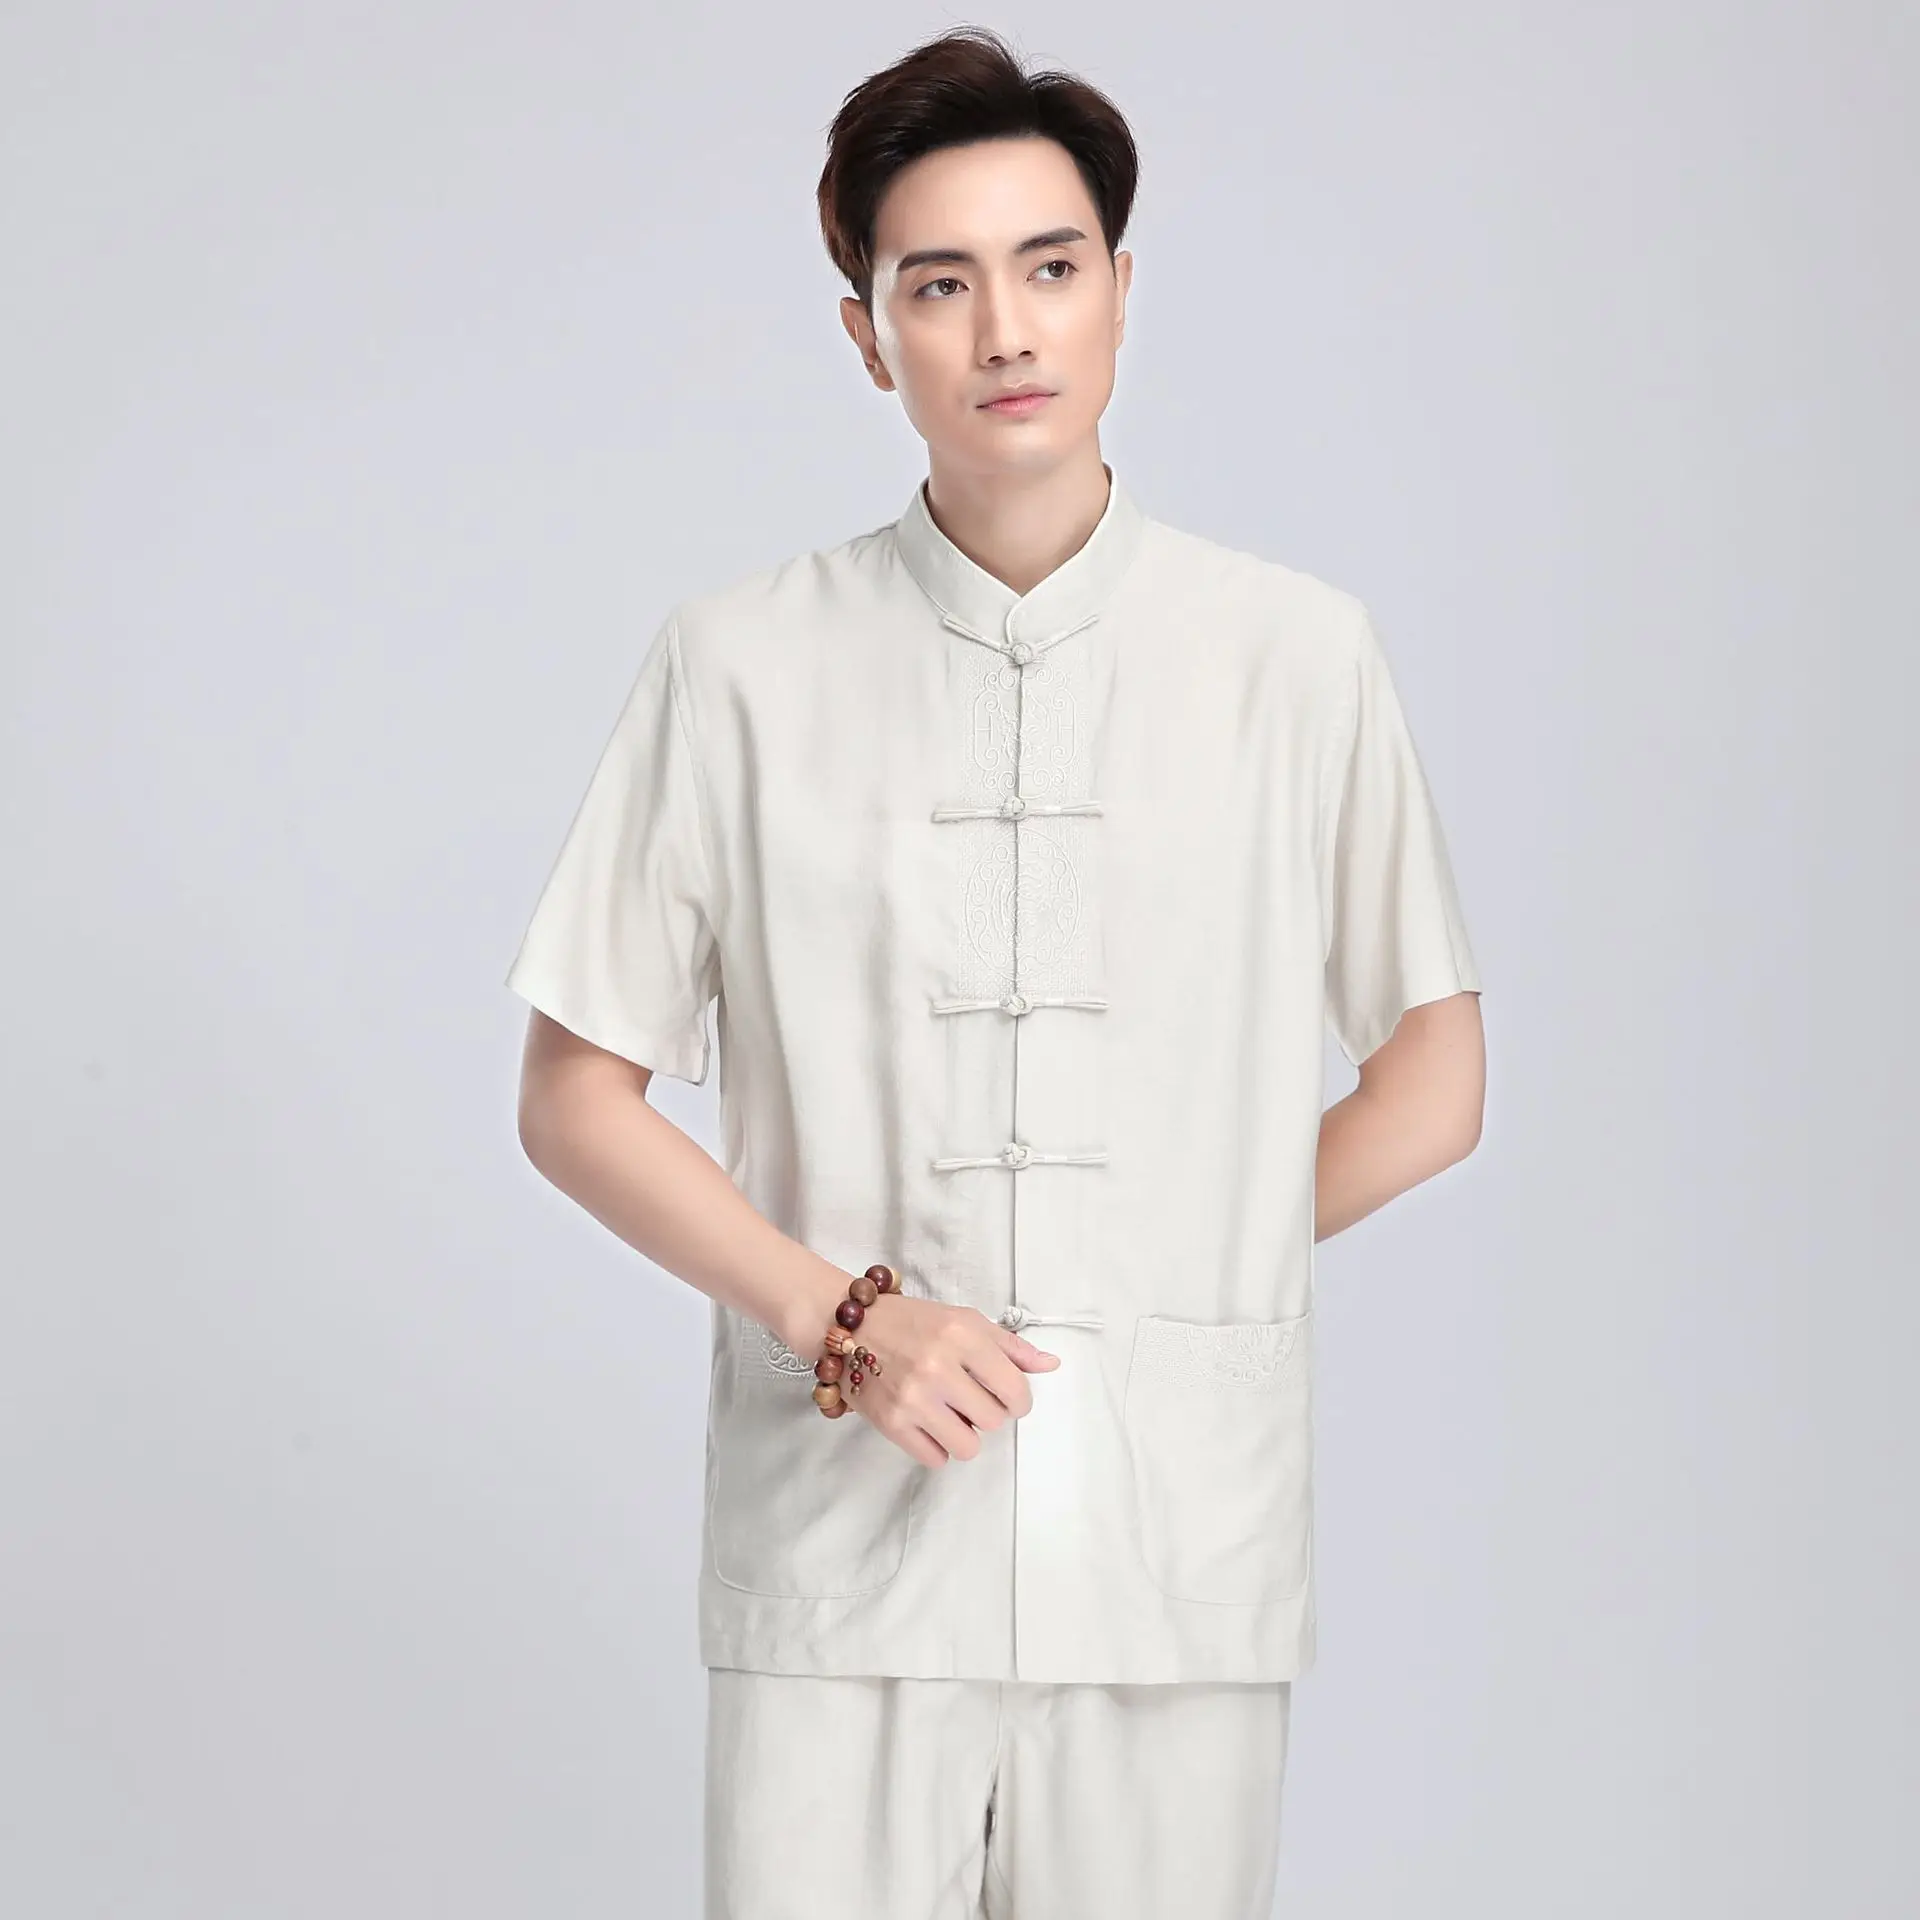 Китайский стиль, китайский стиль, лен, 2815-2, китайский костюм, мужские топы с короткими рукавами, рубашка с короткими рукавами для среднего возраста/комплект